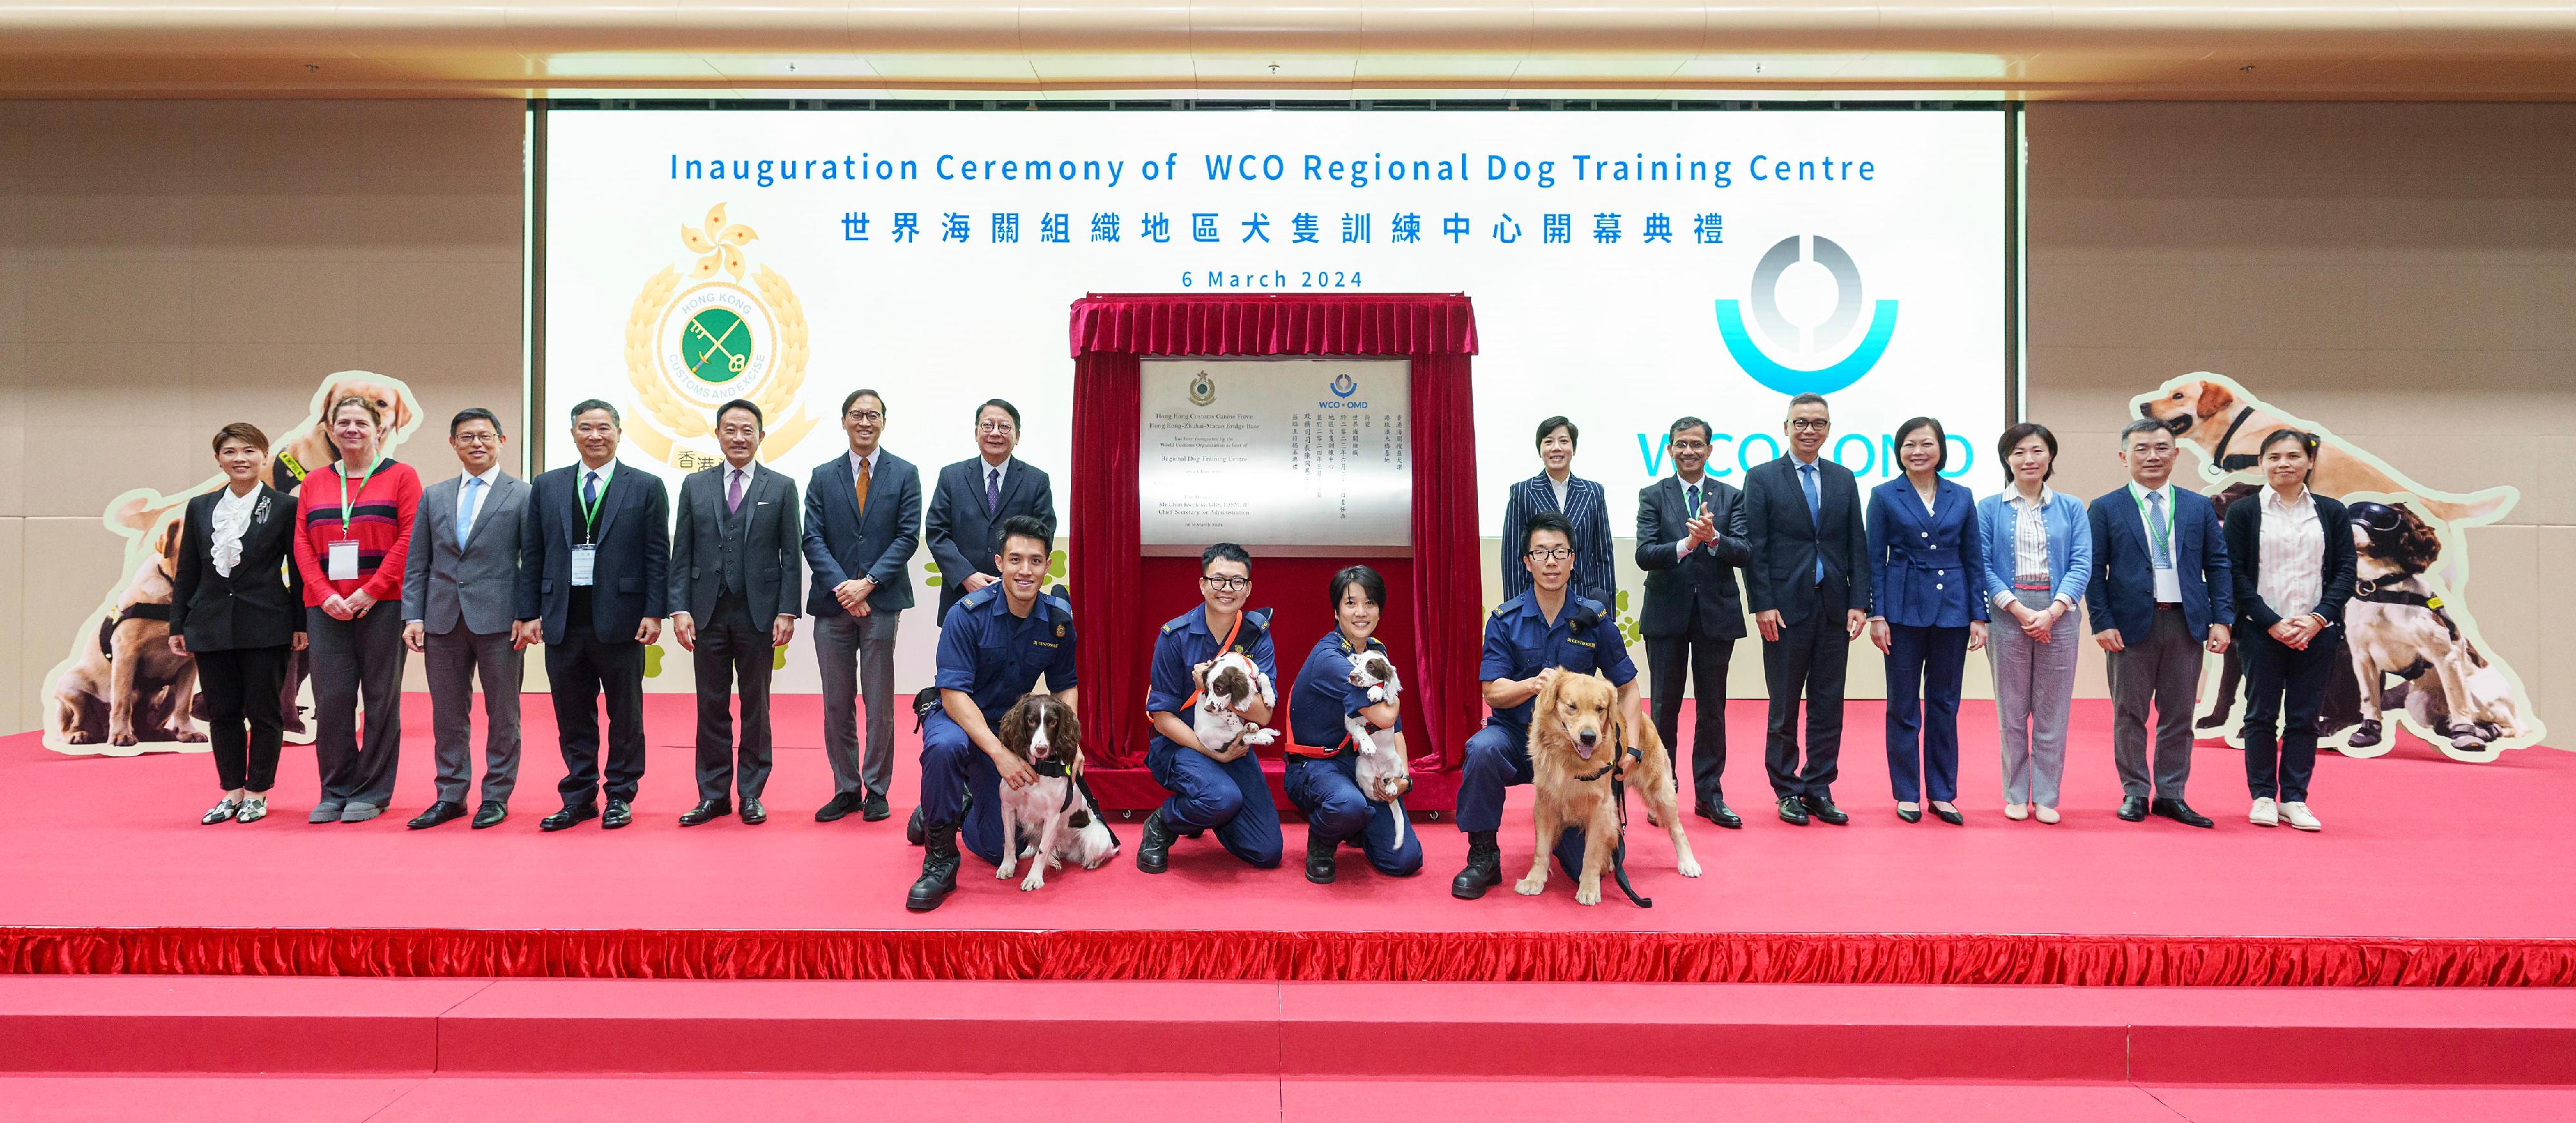 香港海关今日（三月六日）为世界海关组织地区犬只训练中心举行开幕典礼。图示政务司司长陈国基（第二排左七）、香港海关关长何佩珊（第二排右七）及世界海关组织守法和便利司司长Pranab Kumar Das（第二排右六）与参加典礼的其他嘉宾合照。